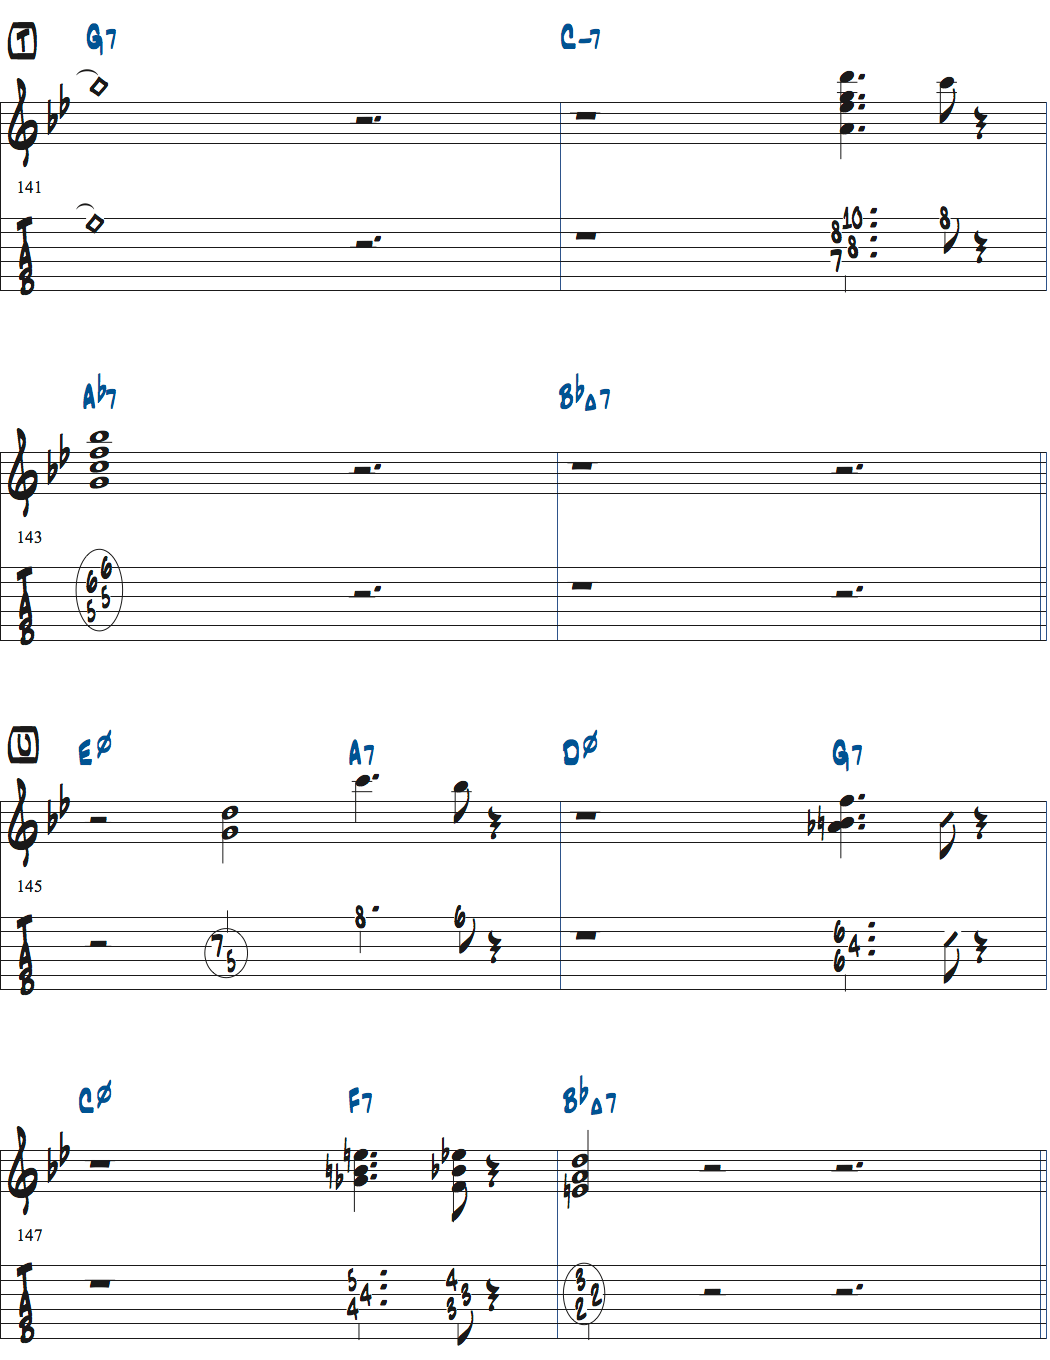 ジョナサン・クライスバーグの星影のステラベースソロのコンピング楽譜ページ4